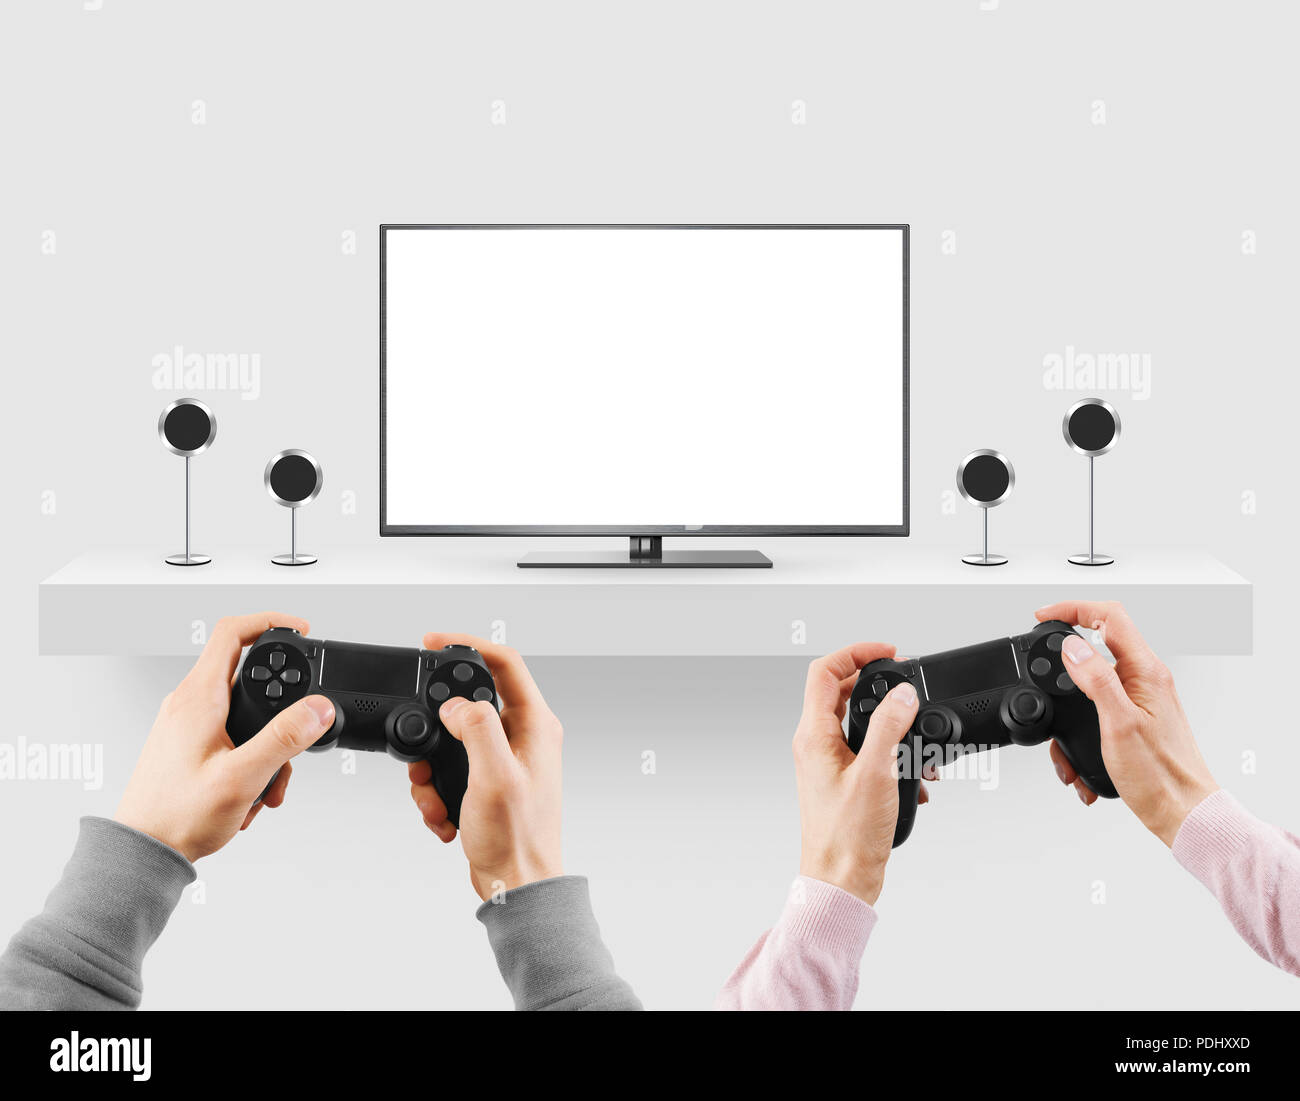 Man tenere il gamepad in mani di fronte a vuoto sullo schermo tv mock up del gioco. Clear monitor mockup con gamer prima persona. Foto Stock